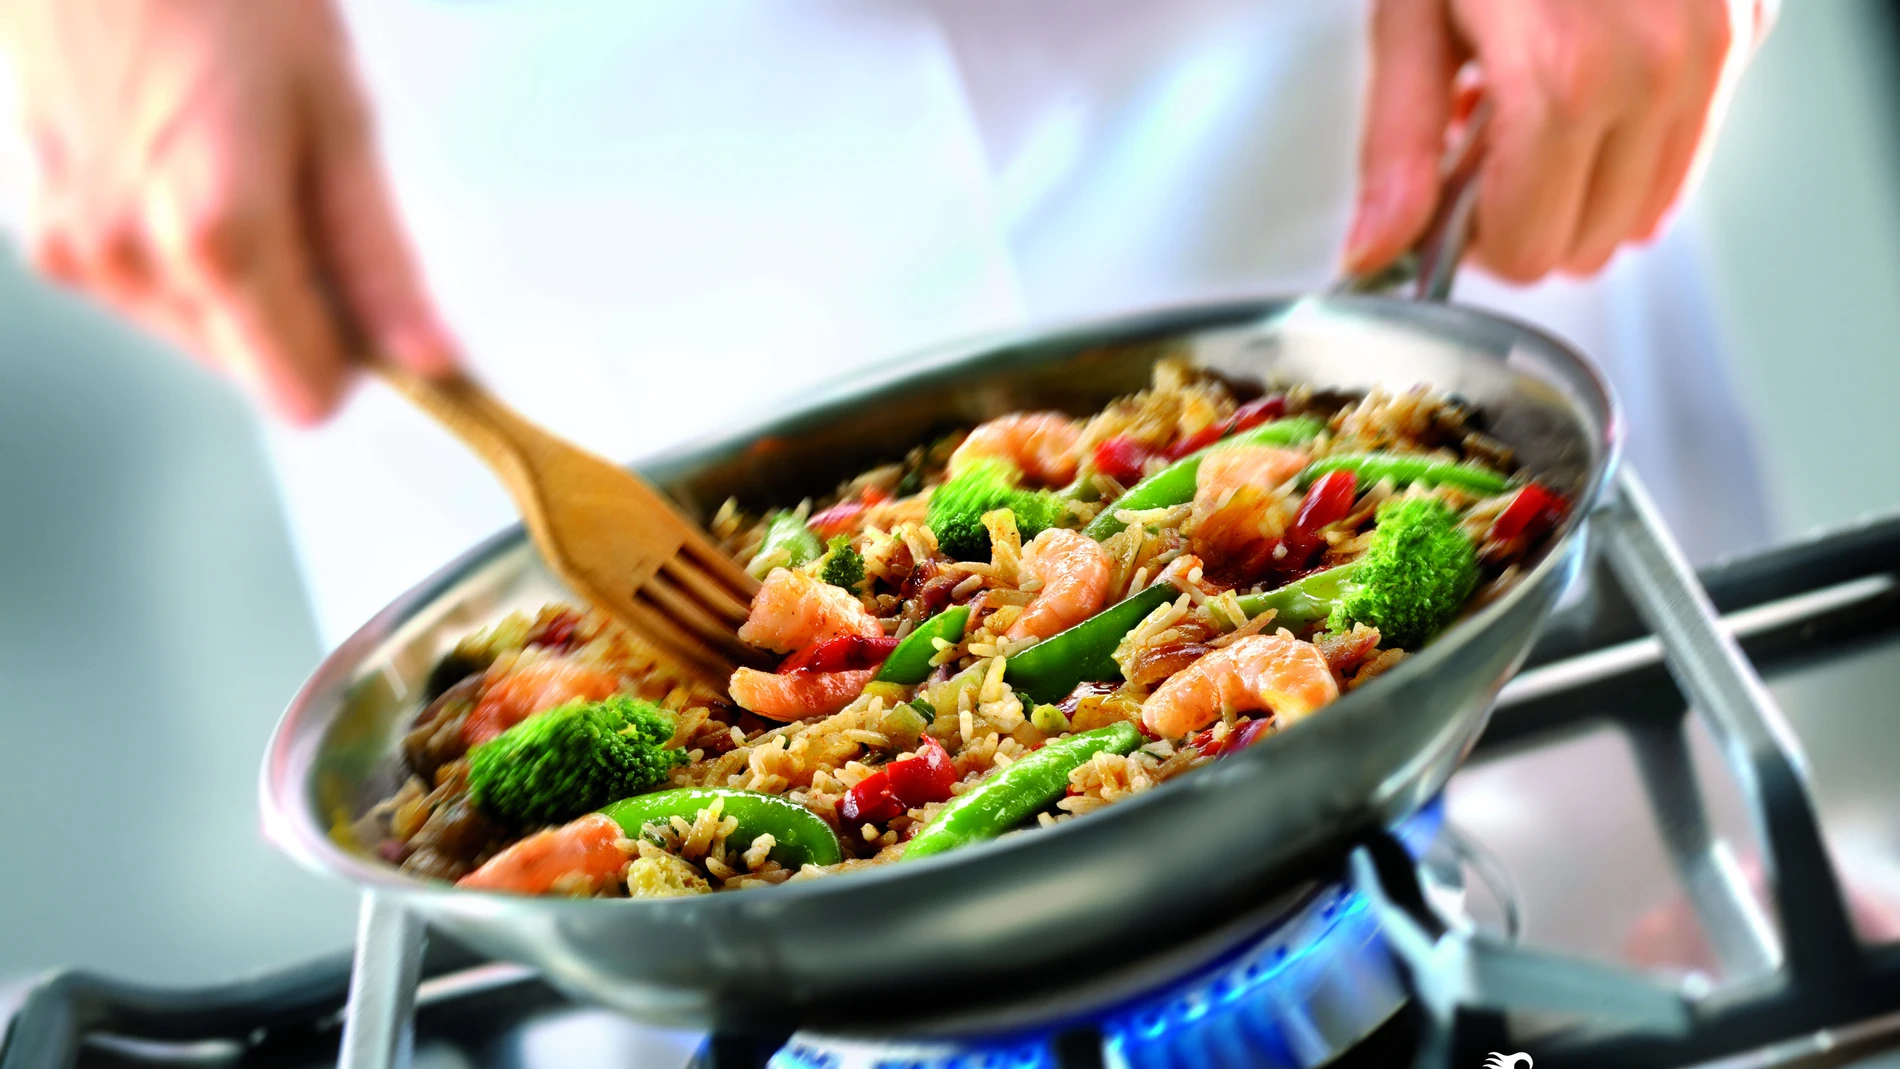 El salteado de verduras y langostinos, de La Sirena, es uno de los alimentos congelados que debemos tener en casa durante esta cuarentena